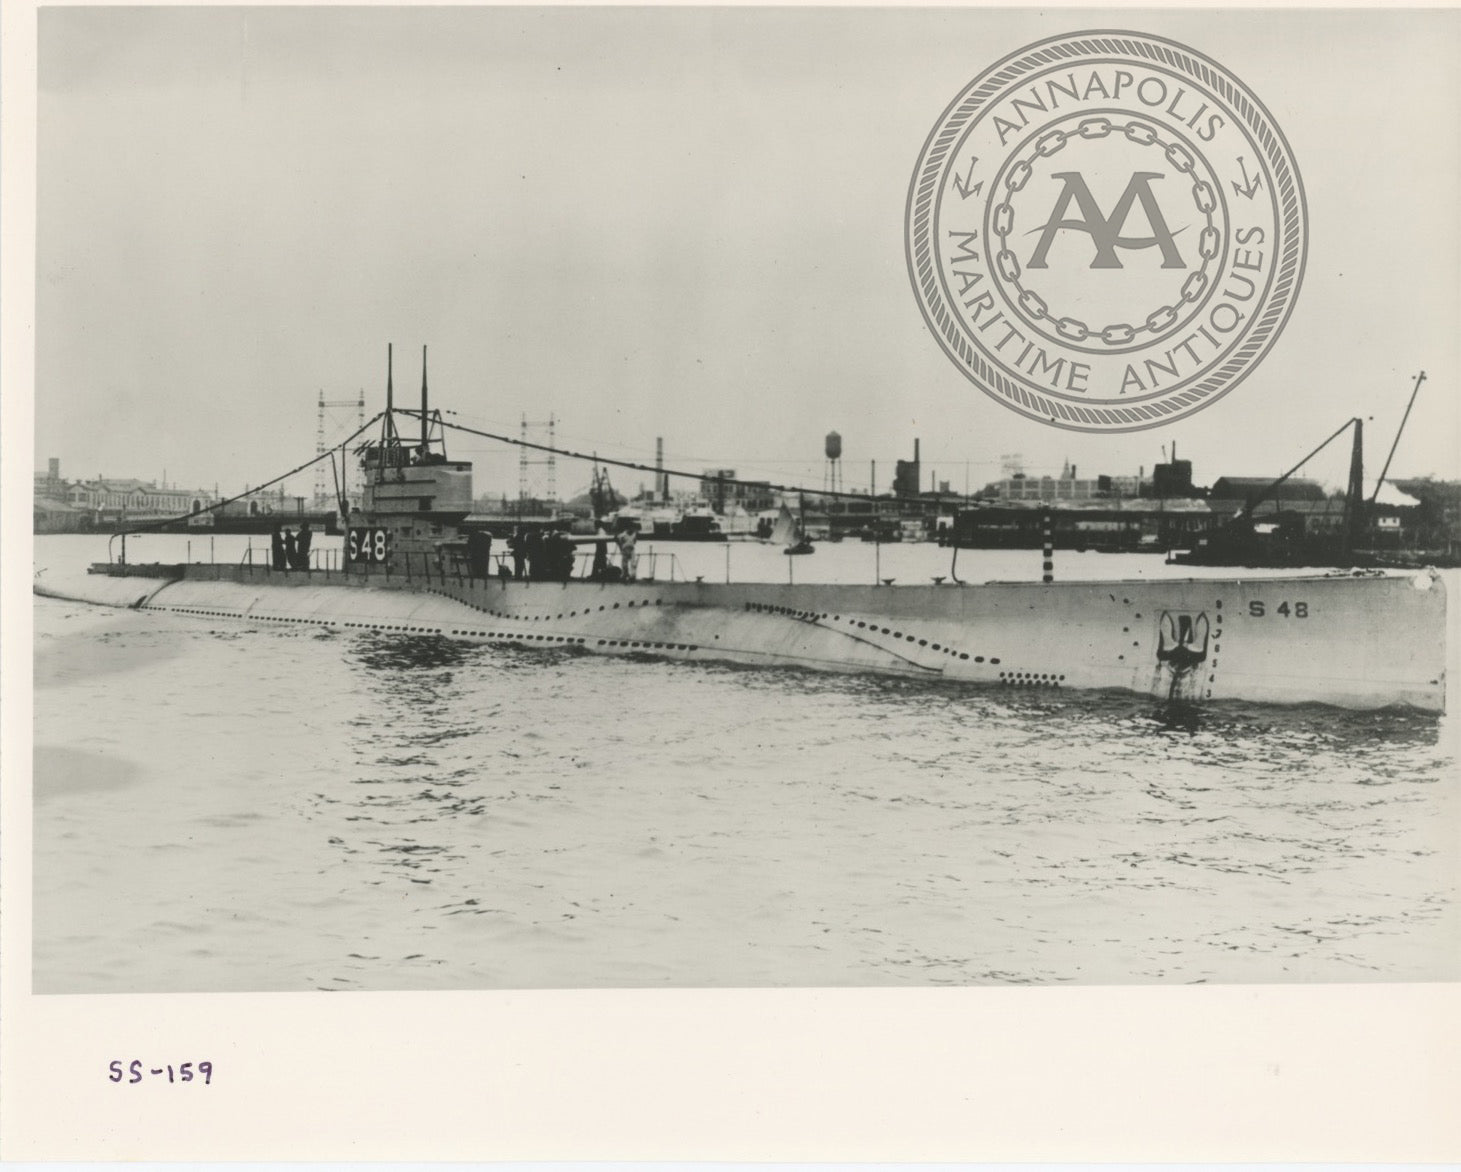 Uss 159 S 48 Submarine Annapolis Maritime Antiques